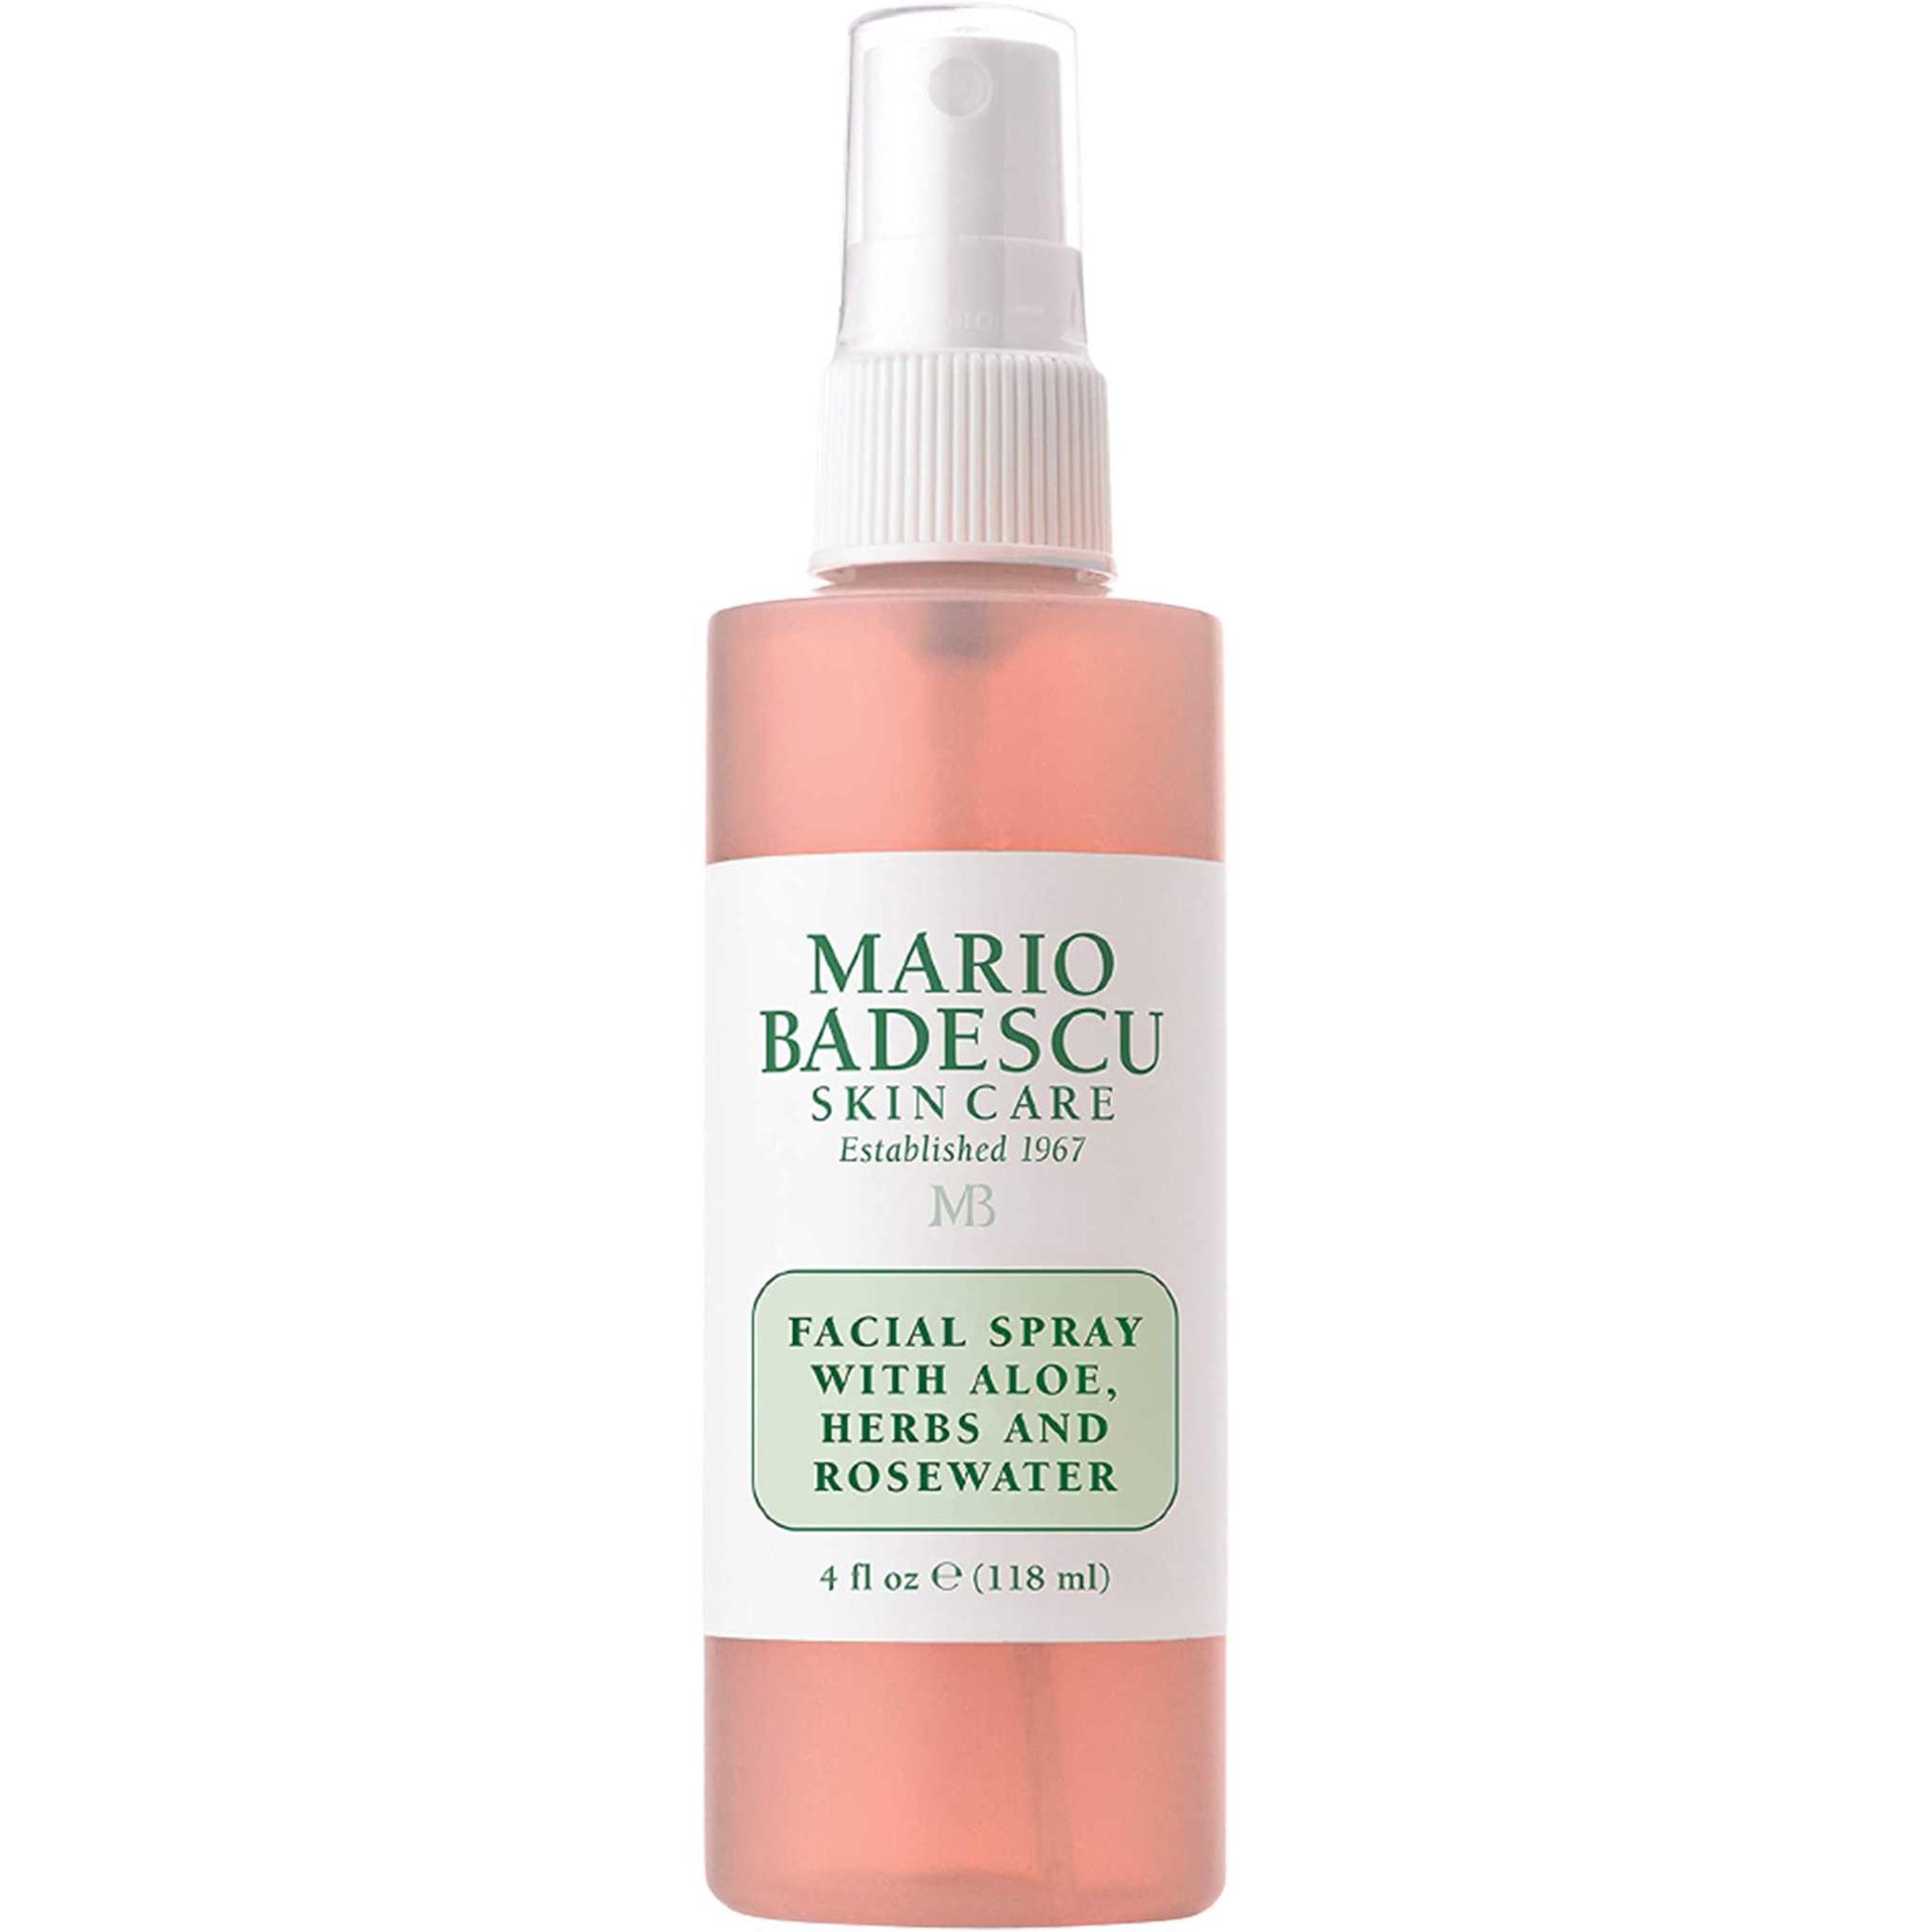 MARIO BADESCU Facial Spray with Aloe, Herbs and Rosewater Mario Badescu